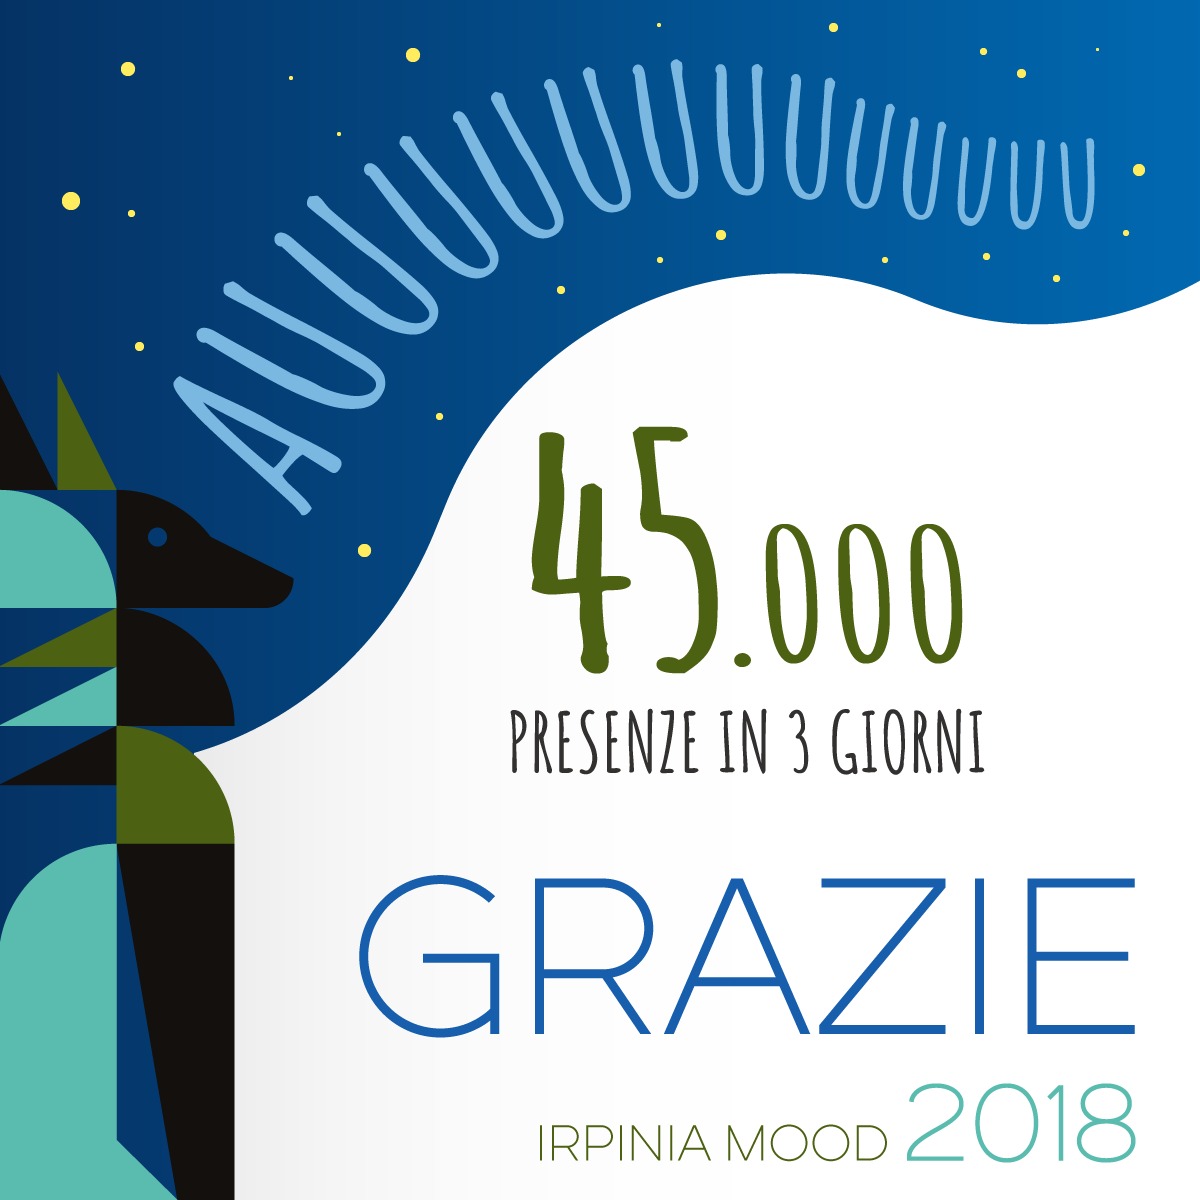 Avellino| Un food festival da 45mila presenze in 3 giorni, Irpinia Mood ringrazia